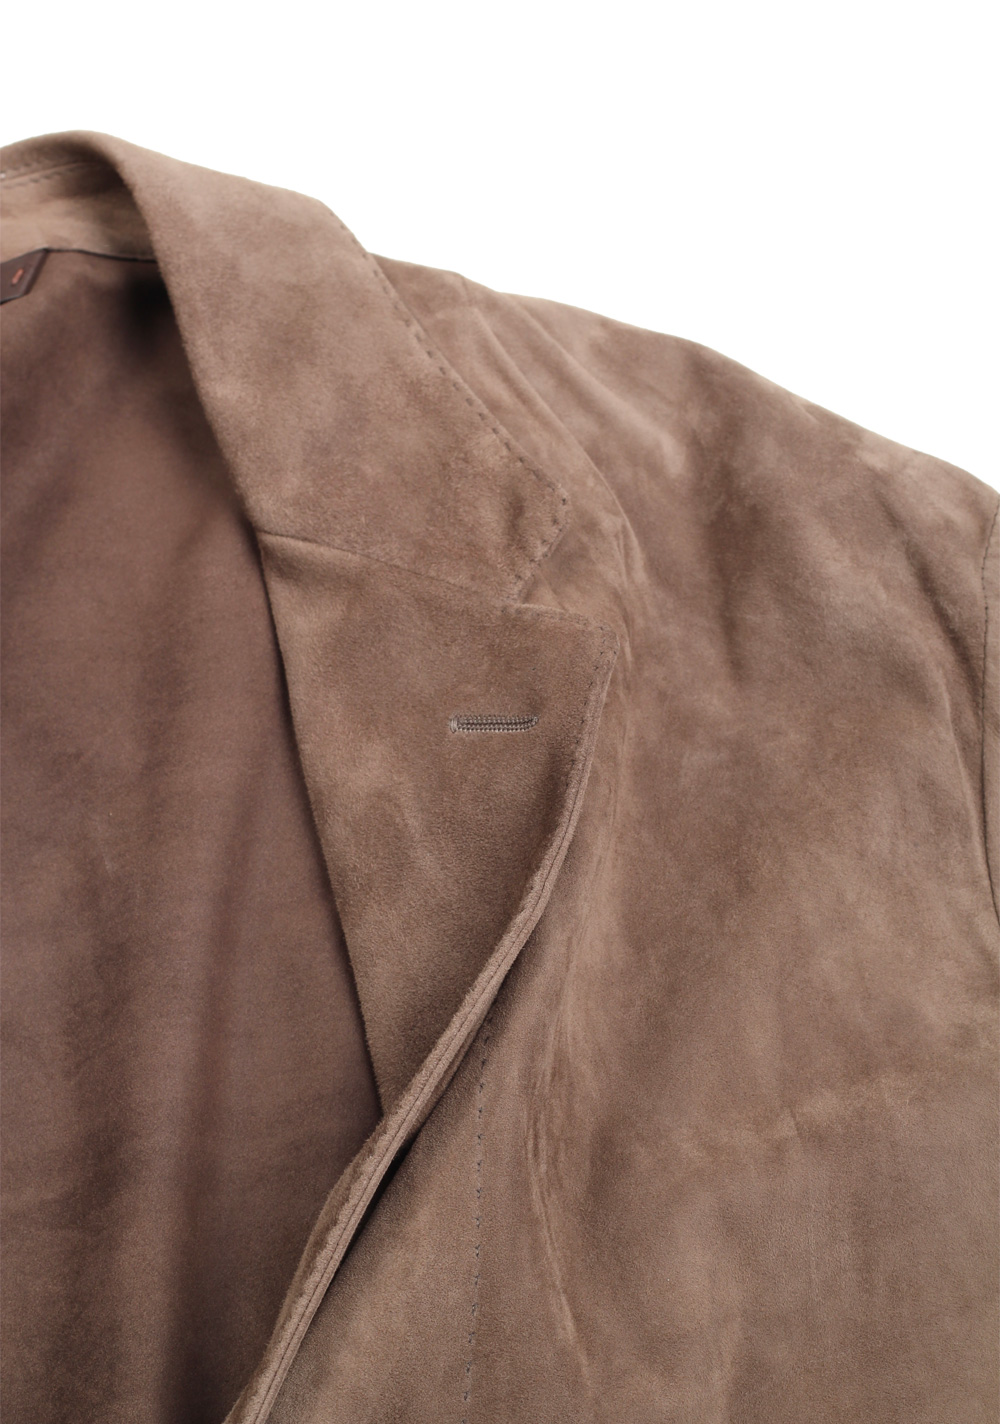 Zegna Brown Suede Blazer Jacket Coat Size 54 / 44R U.S. | Costume Limité